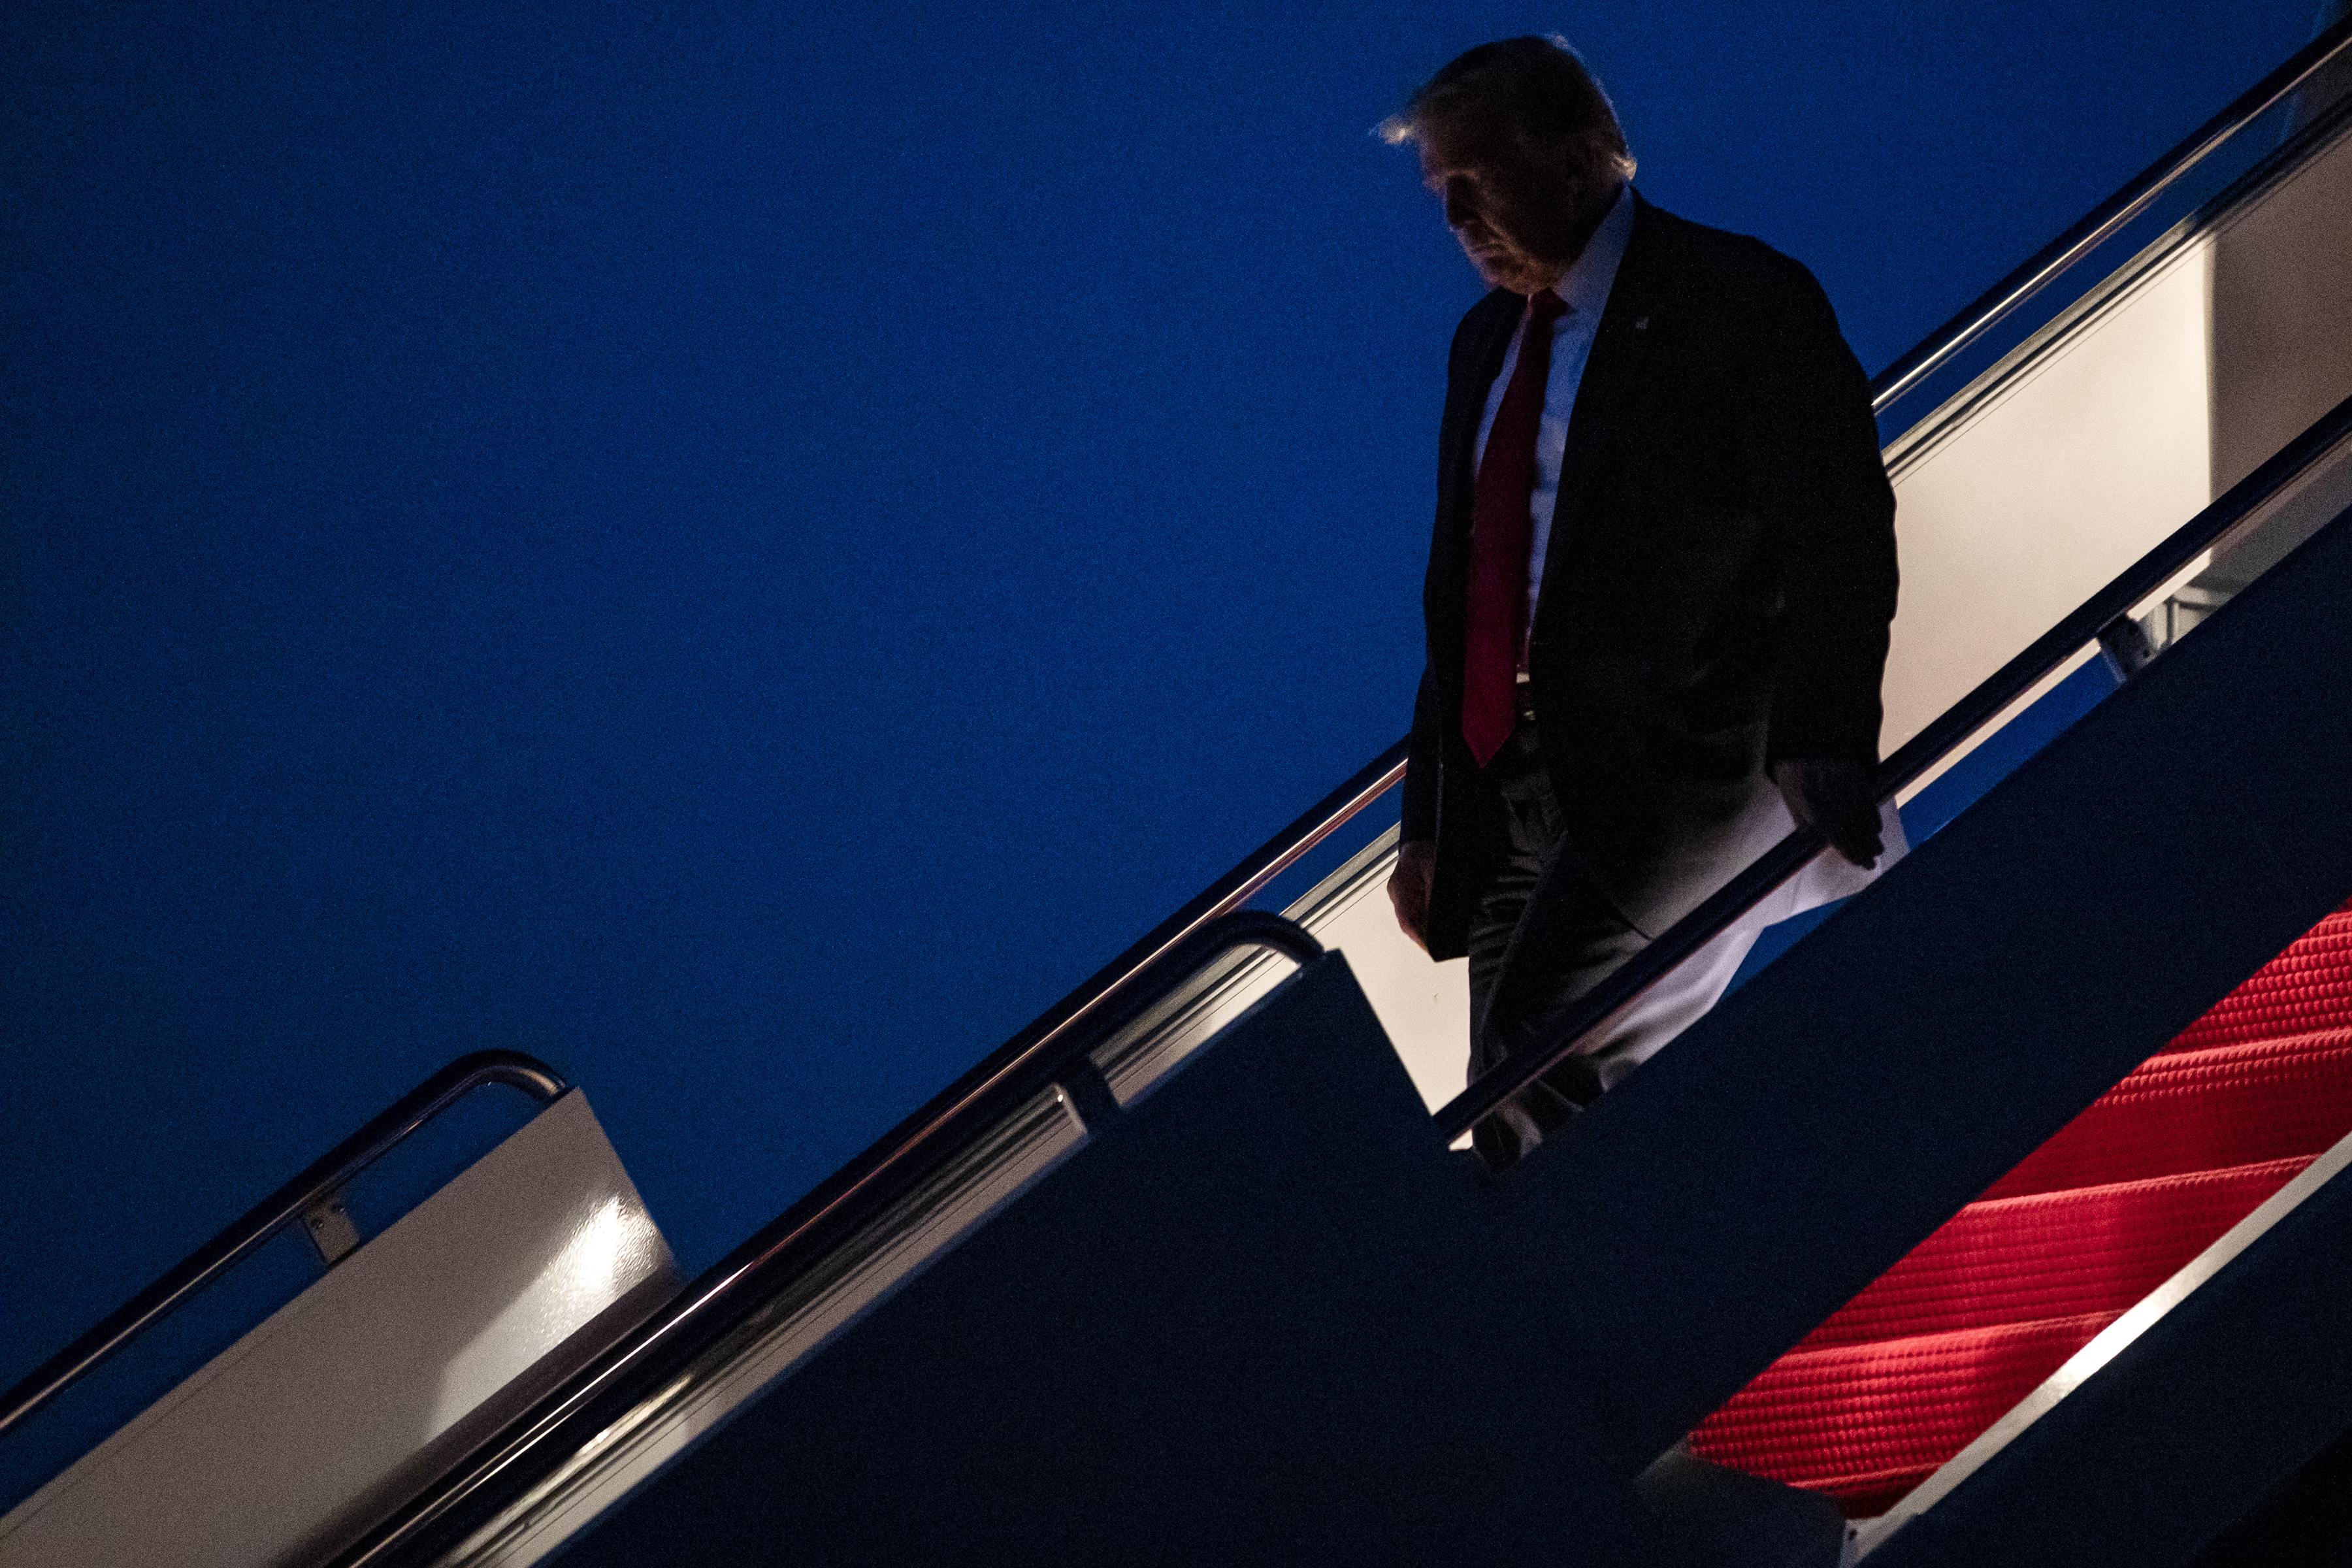 El presidente Donald Trump sale del avión presidencial Air Force One en la Base Conjunta Andrews en Maryland, el 10 de julio de 2020, después de un viaje a Florida. (Foto Prensa Libre: Samuel Corum/The New York Times)